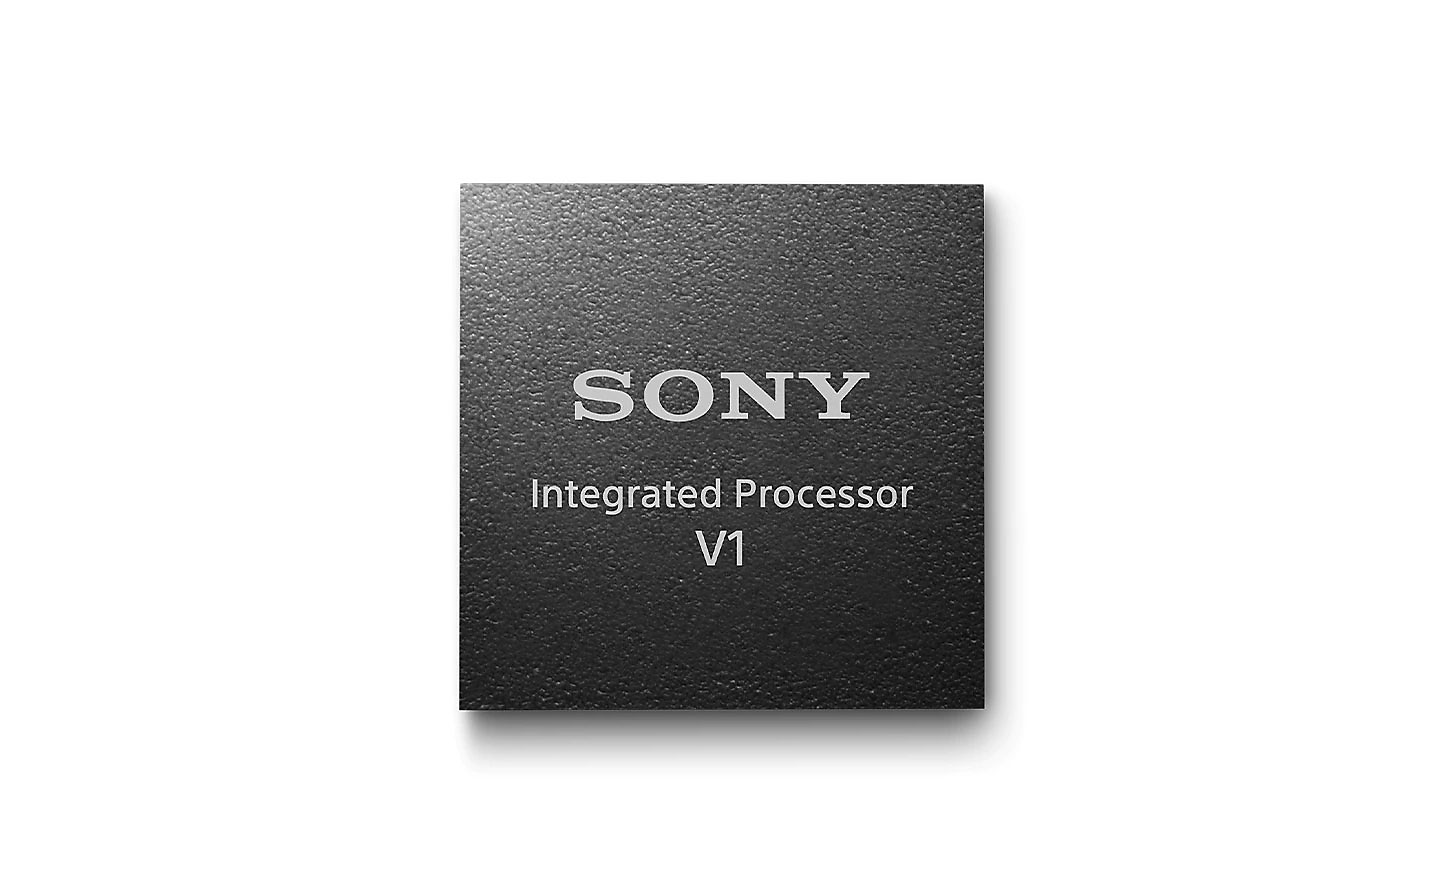 Immagine del processore integrato V1 di Sony